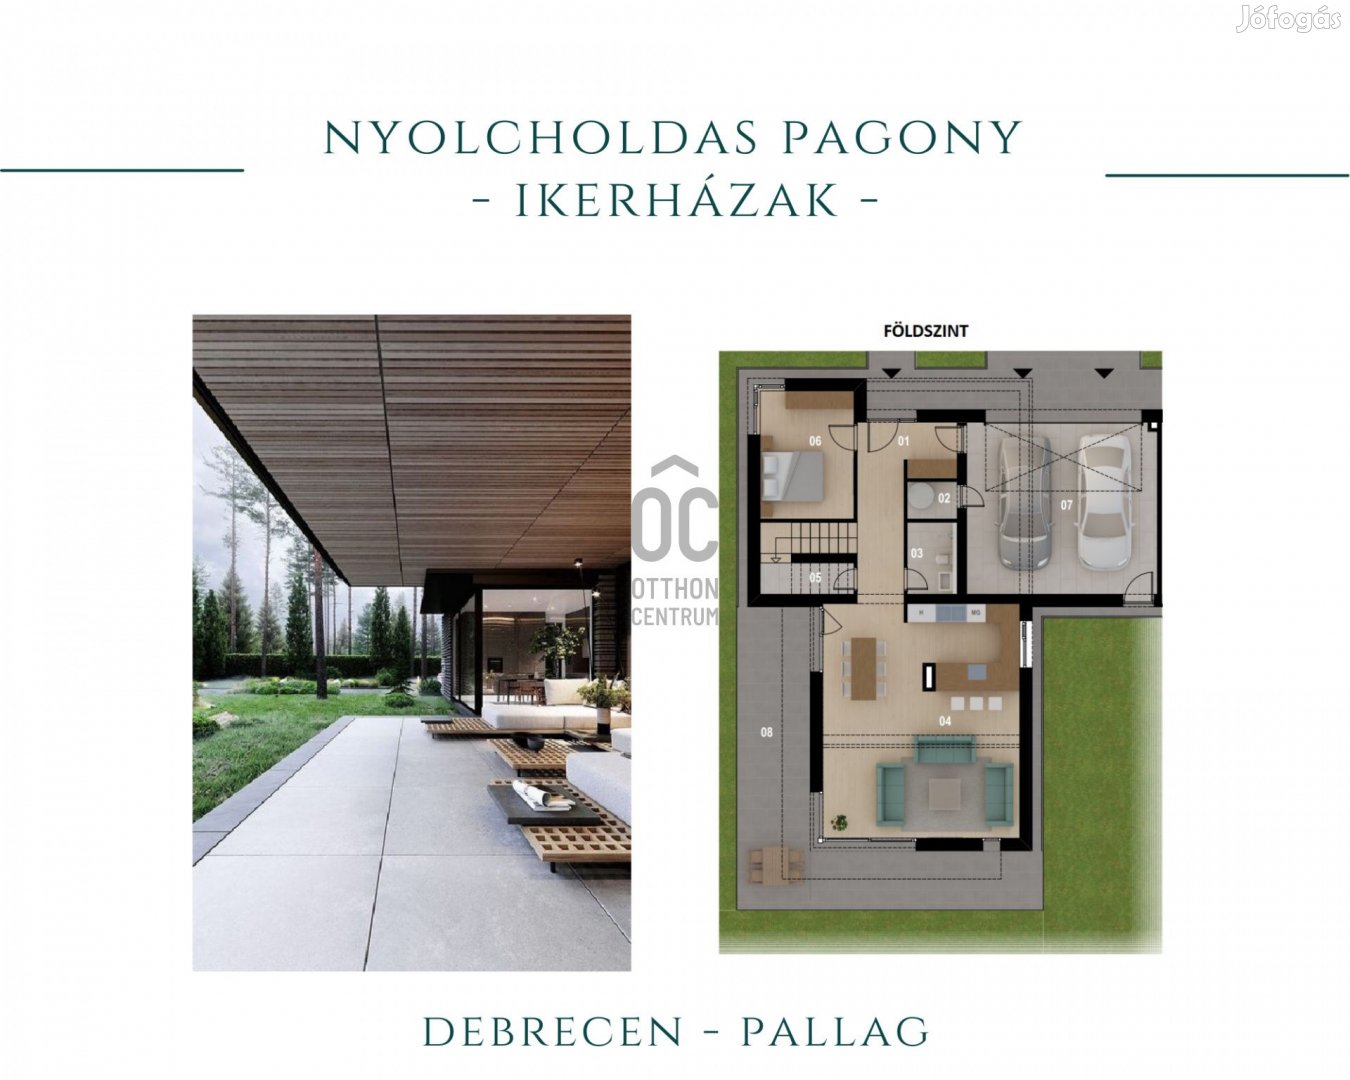 Nyolcholdas Pagony - új építésű ikerházak